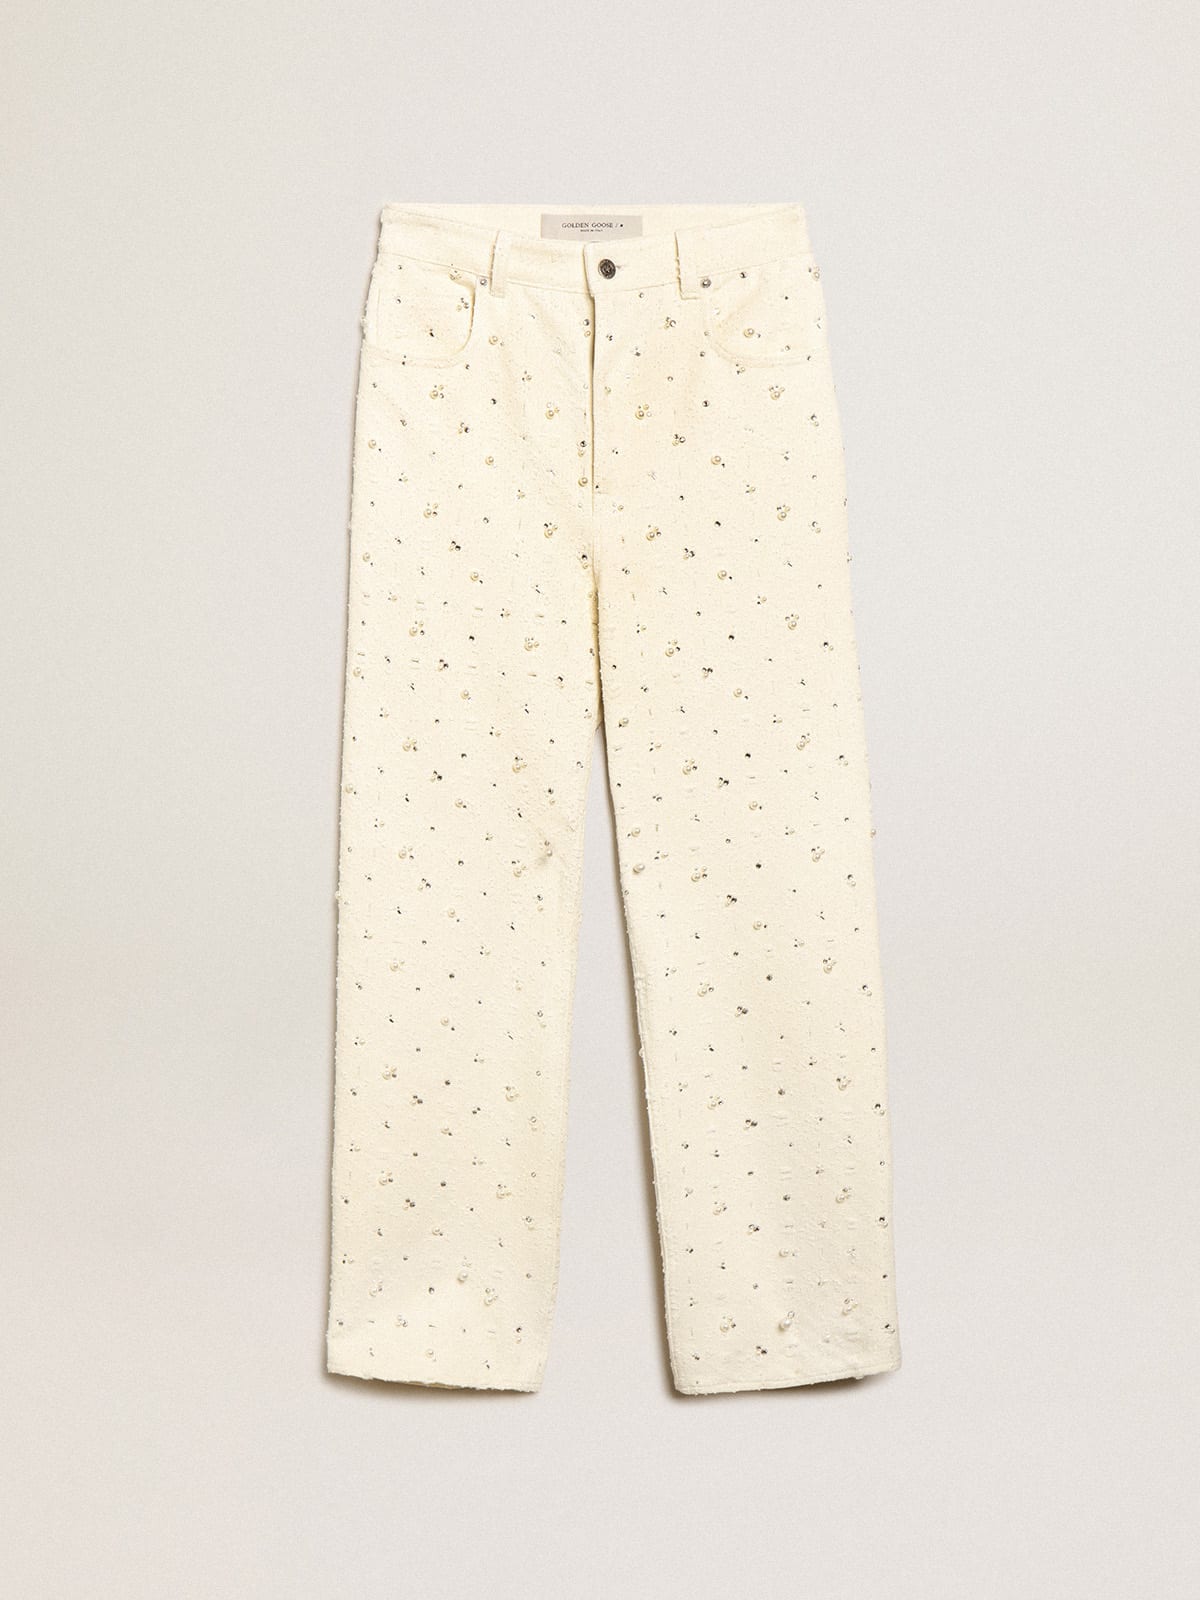 Golden Goose - Jeans Kim Collezione Journey in cotone color bianco sporco con motivi a rombi e applicazione di perle e cristalli in 